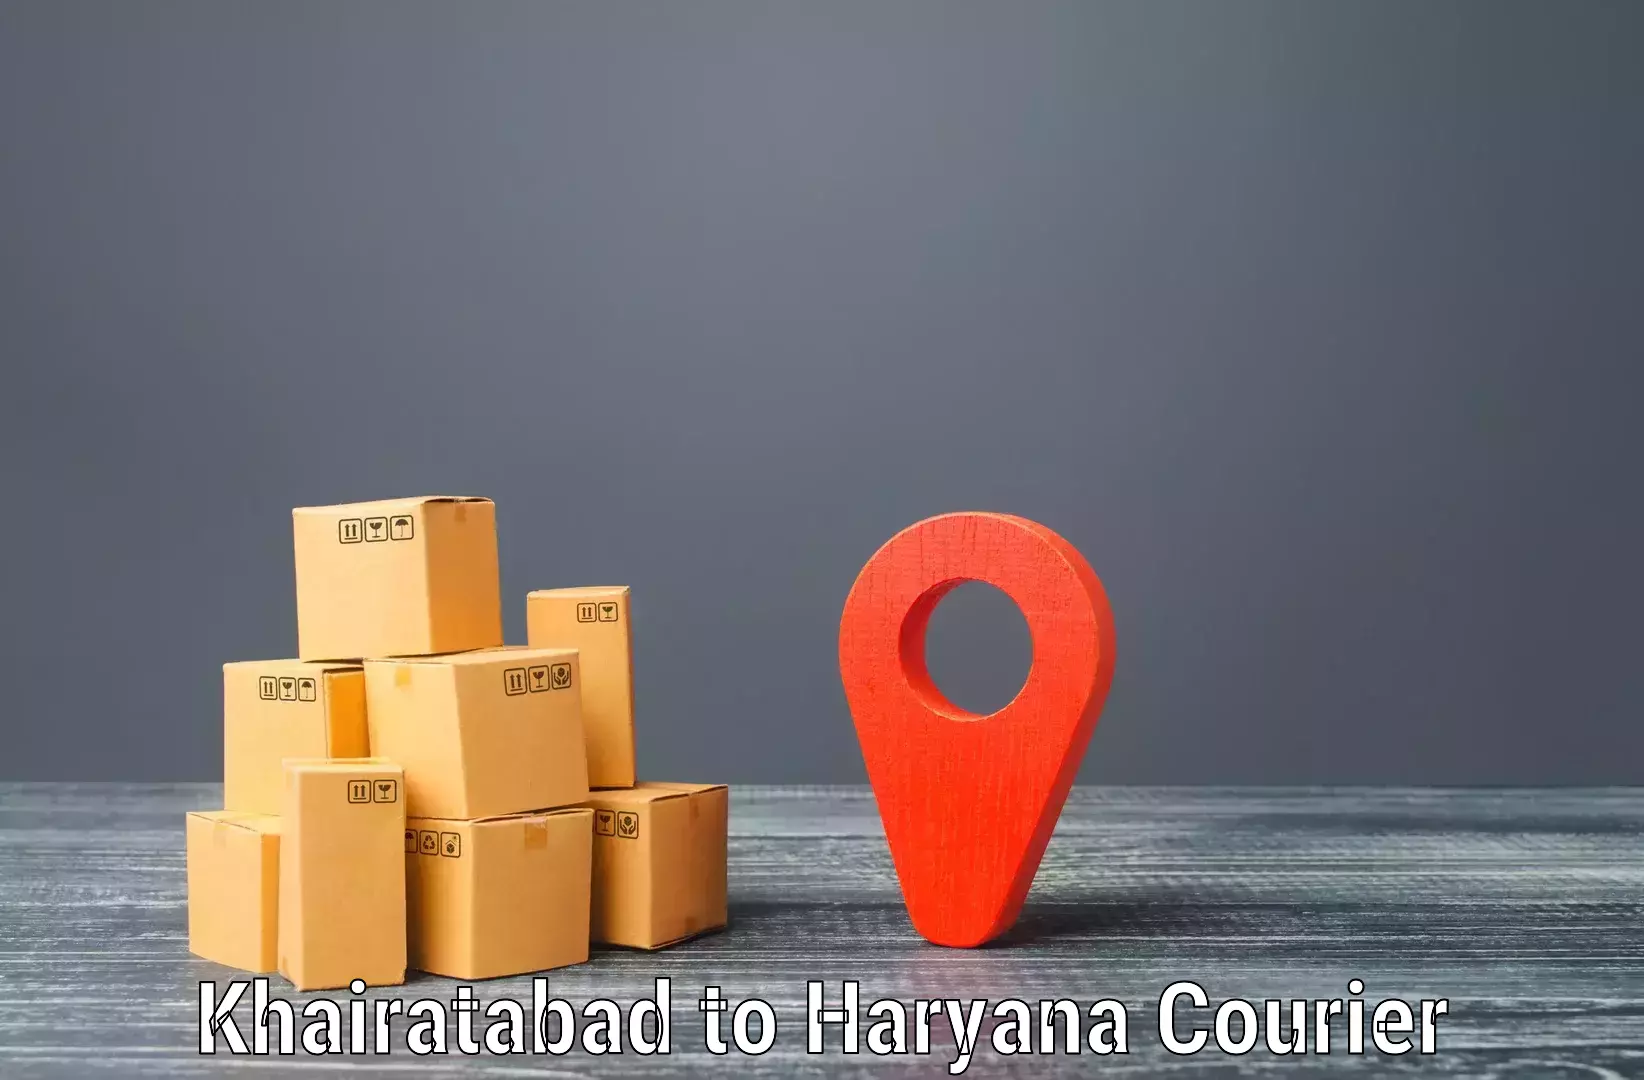 Flexible parcel services Khairatabad to Nuh